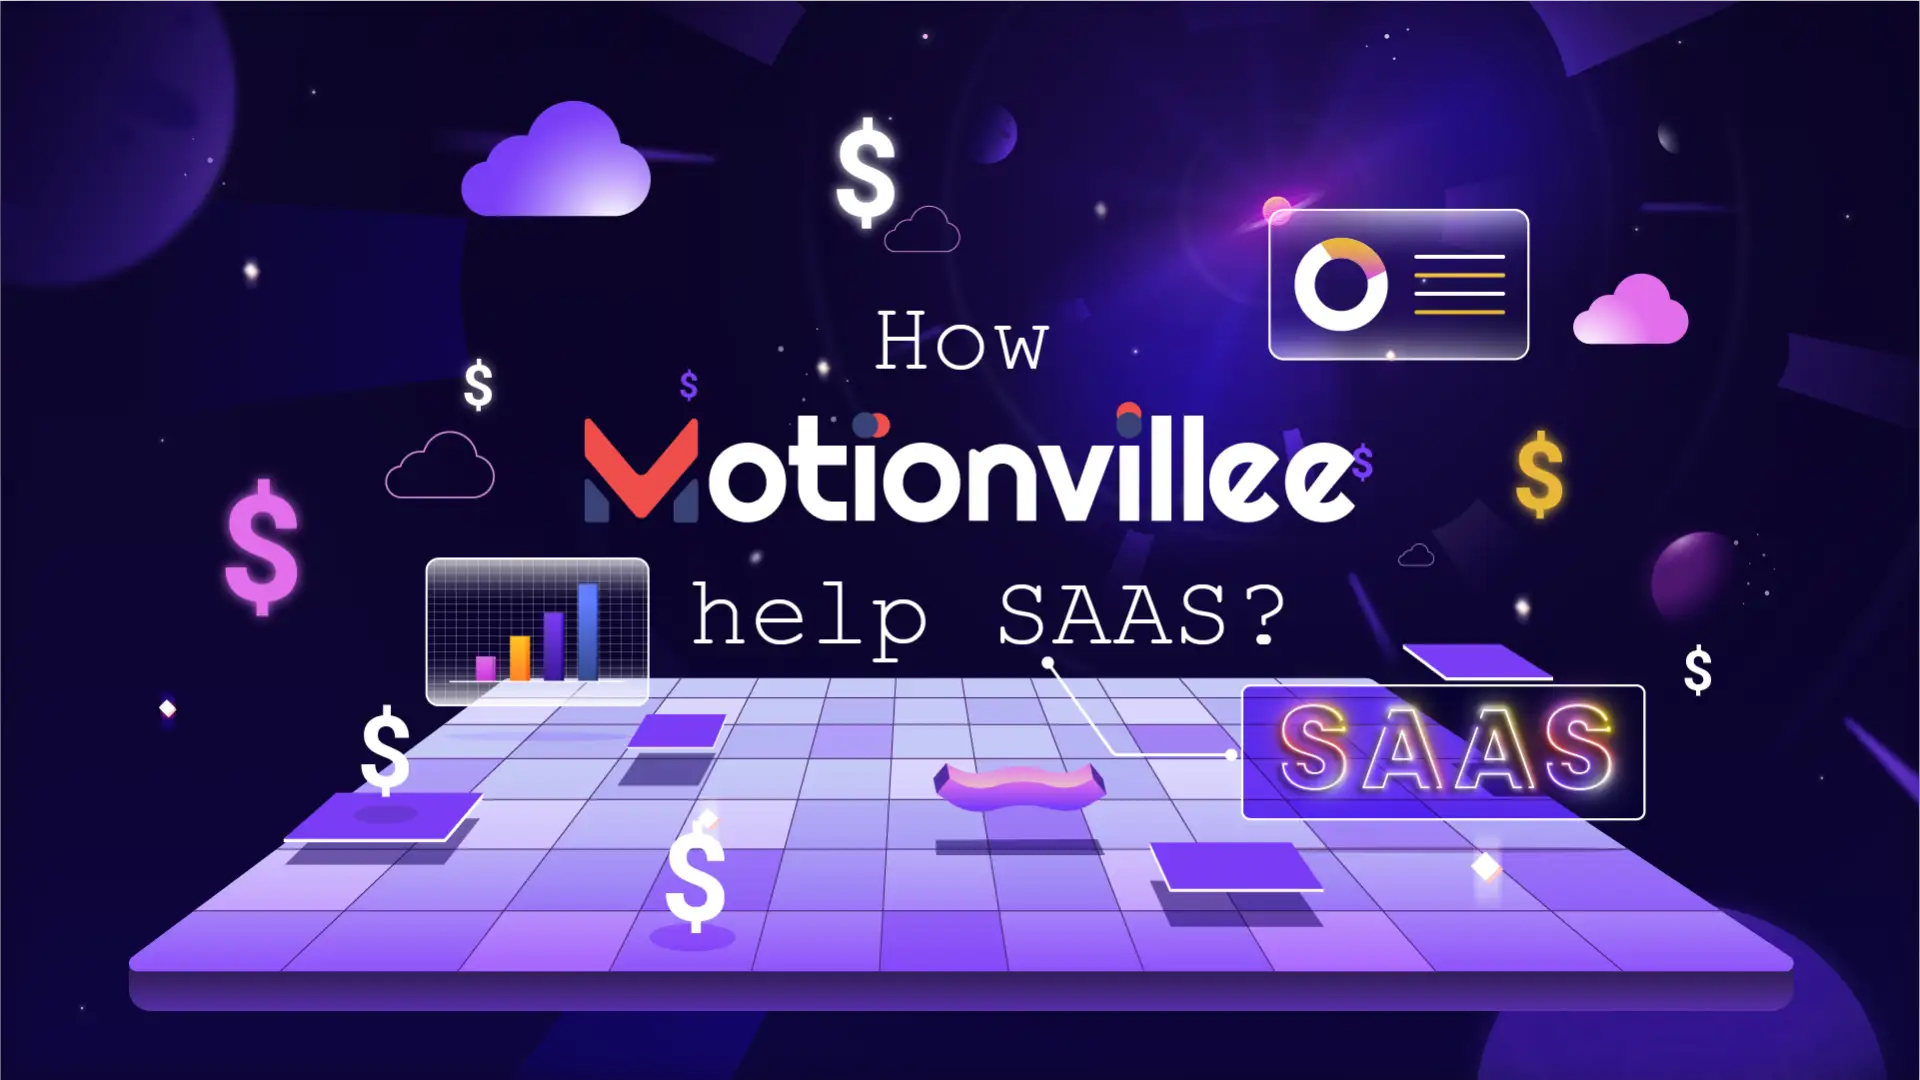 How motionvillee help Saas